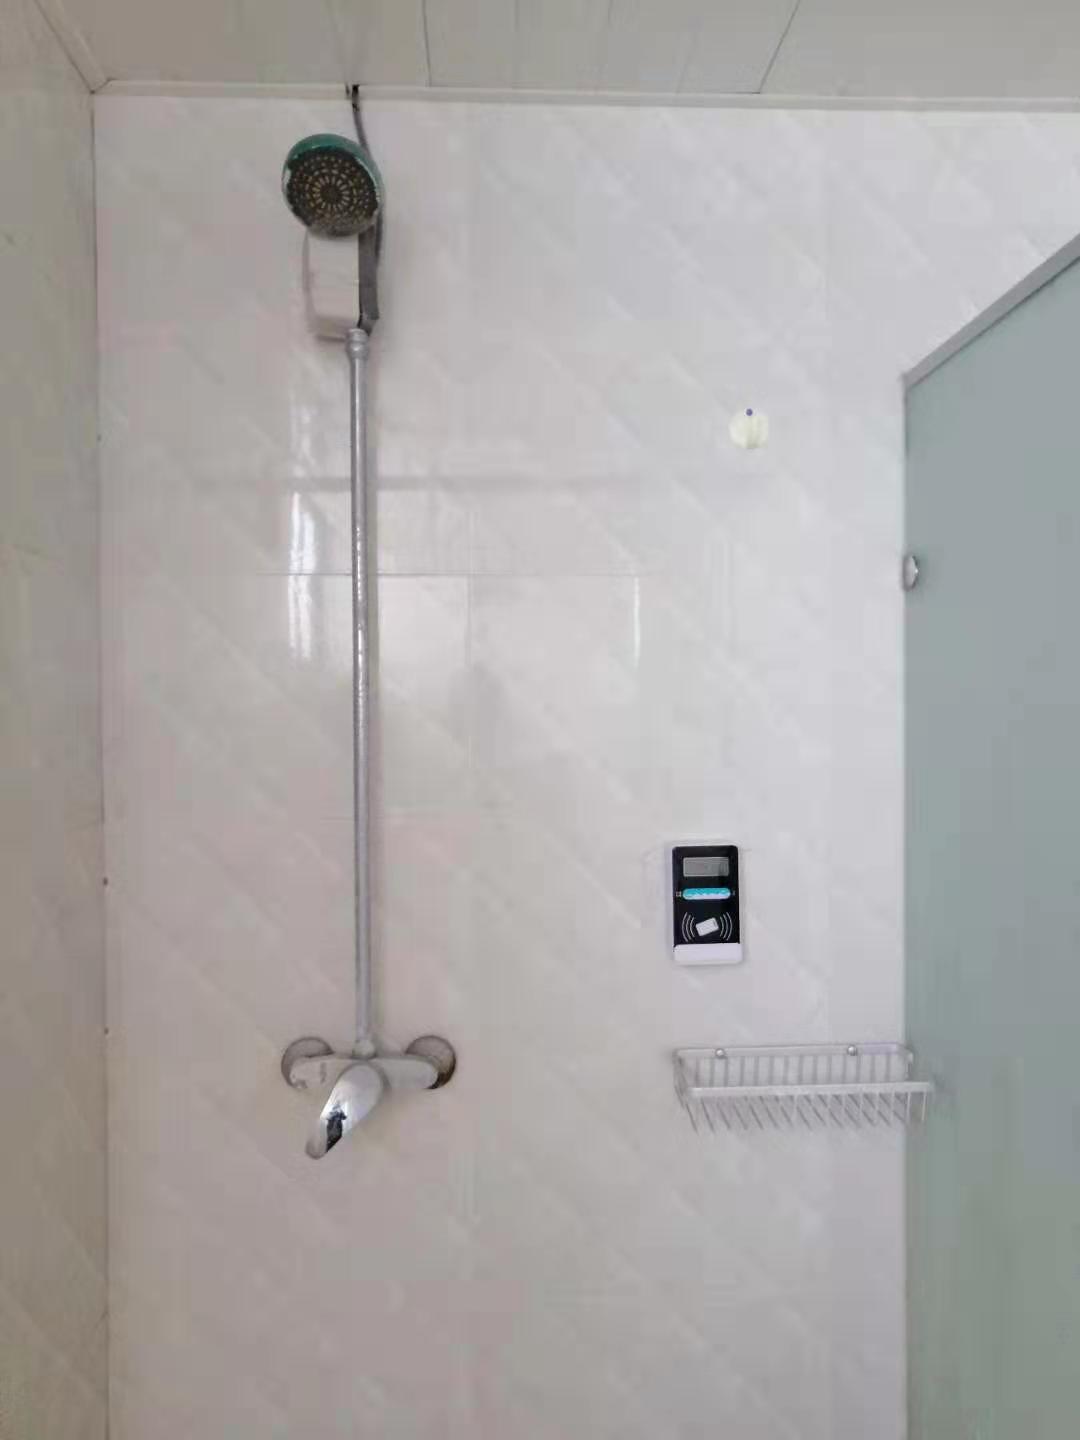 上海刷卡水控器,智能IC卡水控器,淋浴插卡水控系统 上海刷卡淋浴水控器